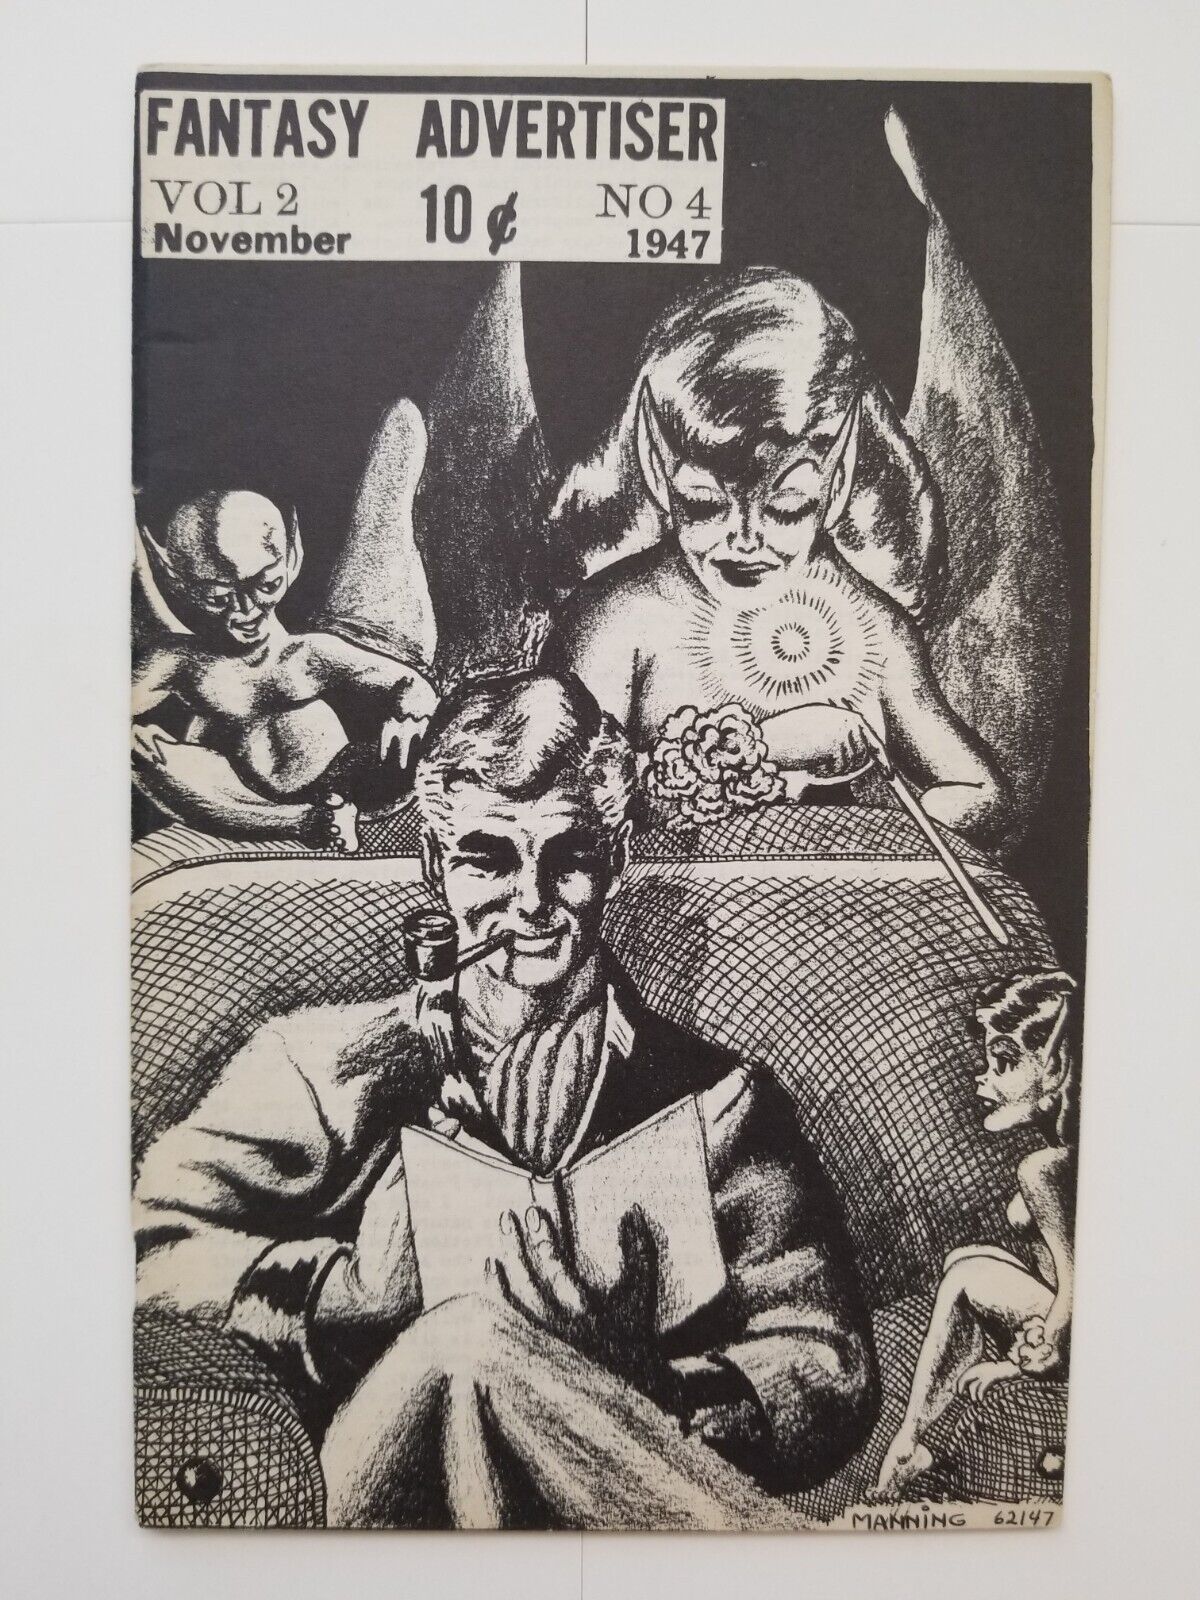 Fantasy Advertiser Vol 2 Issue 4 (VF, 1947) fanzine, golden age comic ads